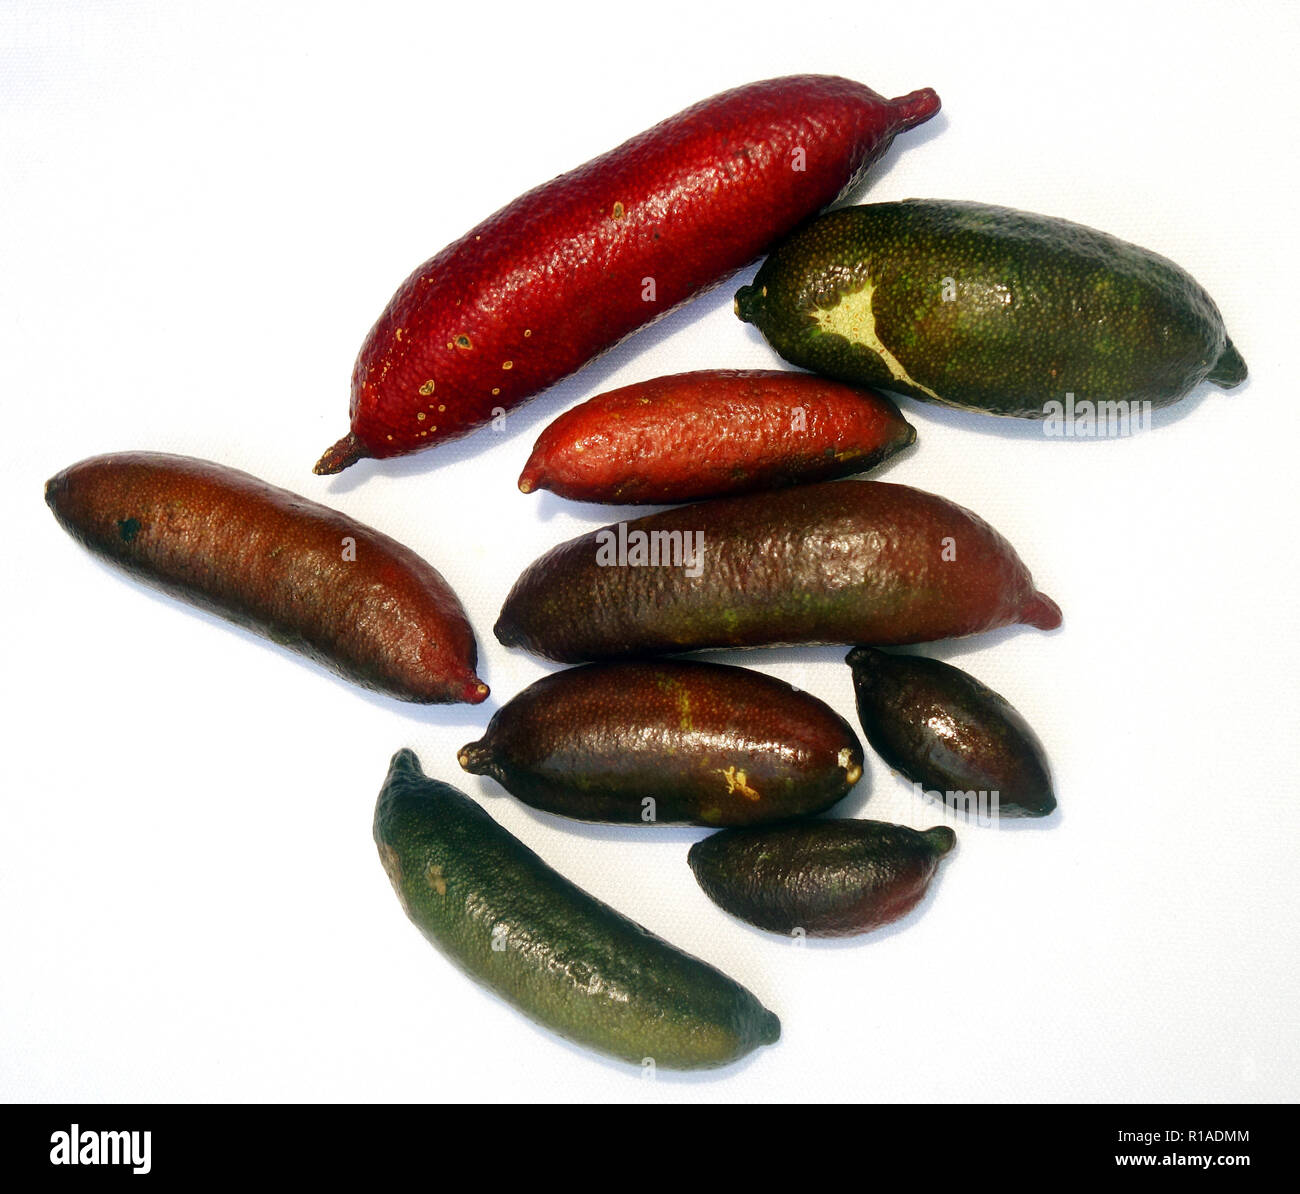 Australian native finger limes (Citrus australasicum) on white background Stock Photo